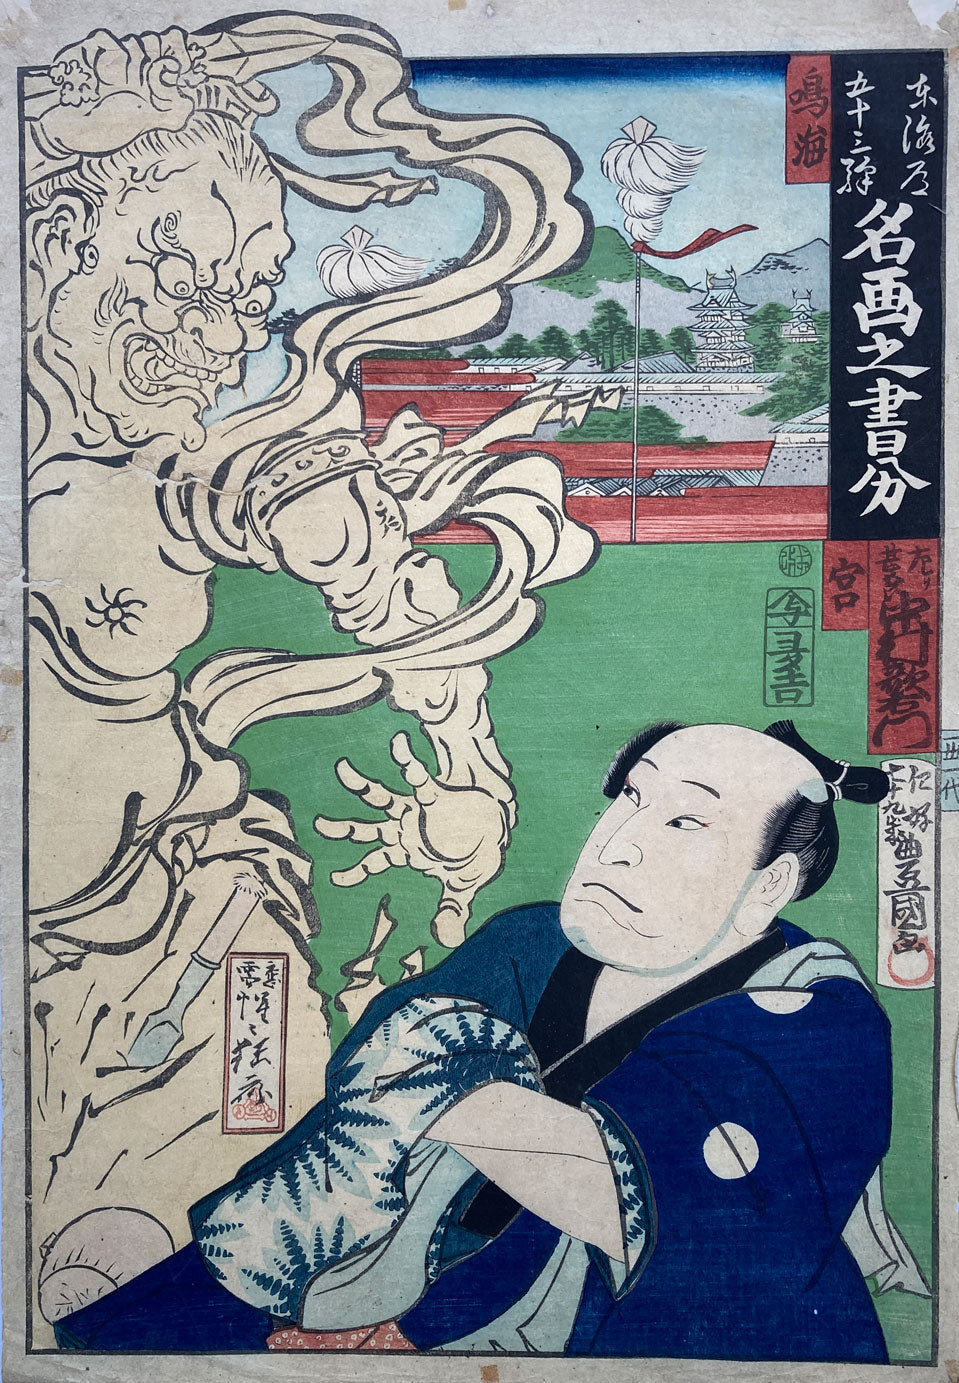 mg0067-Kunisada and Kyosai-Narumi and Miya - Tokaido-japanese-woodblock-print